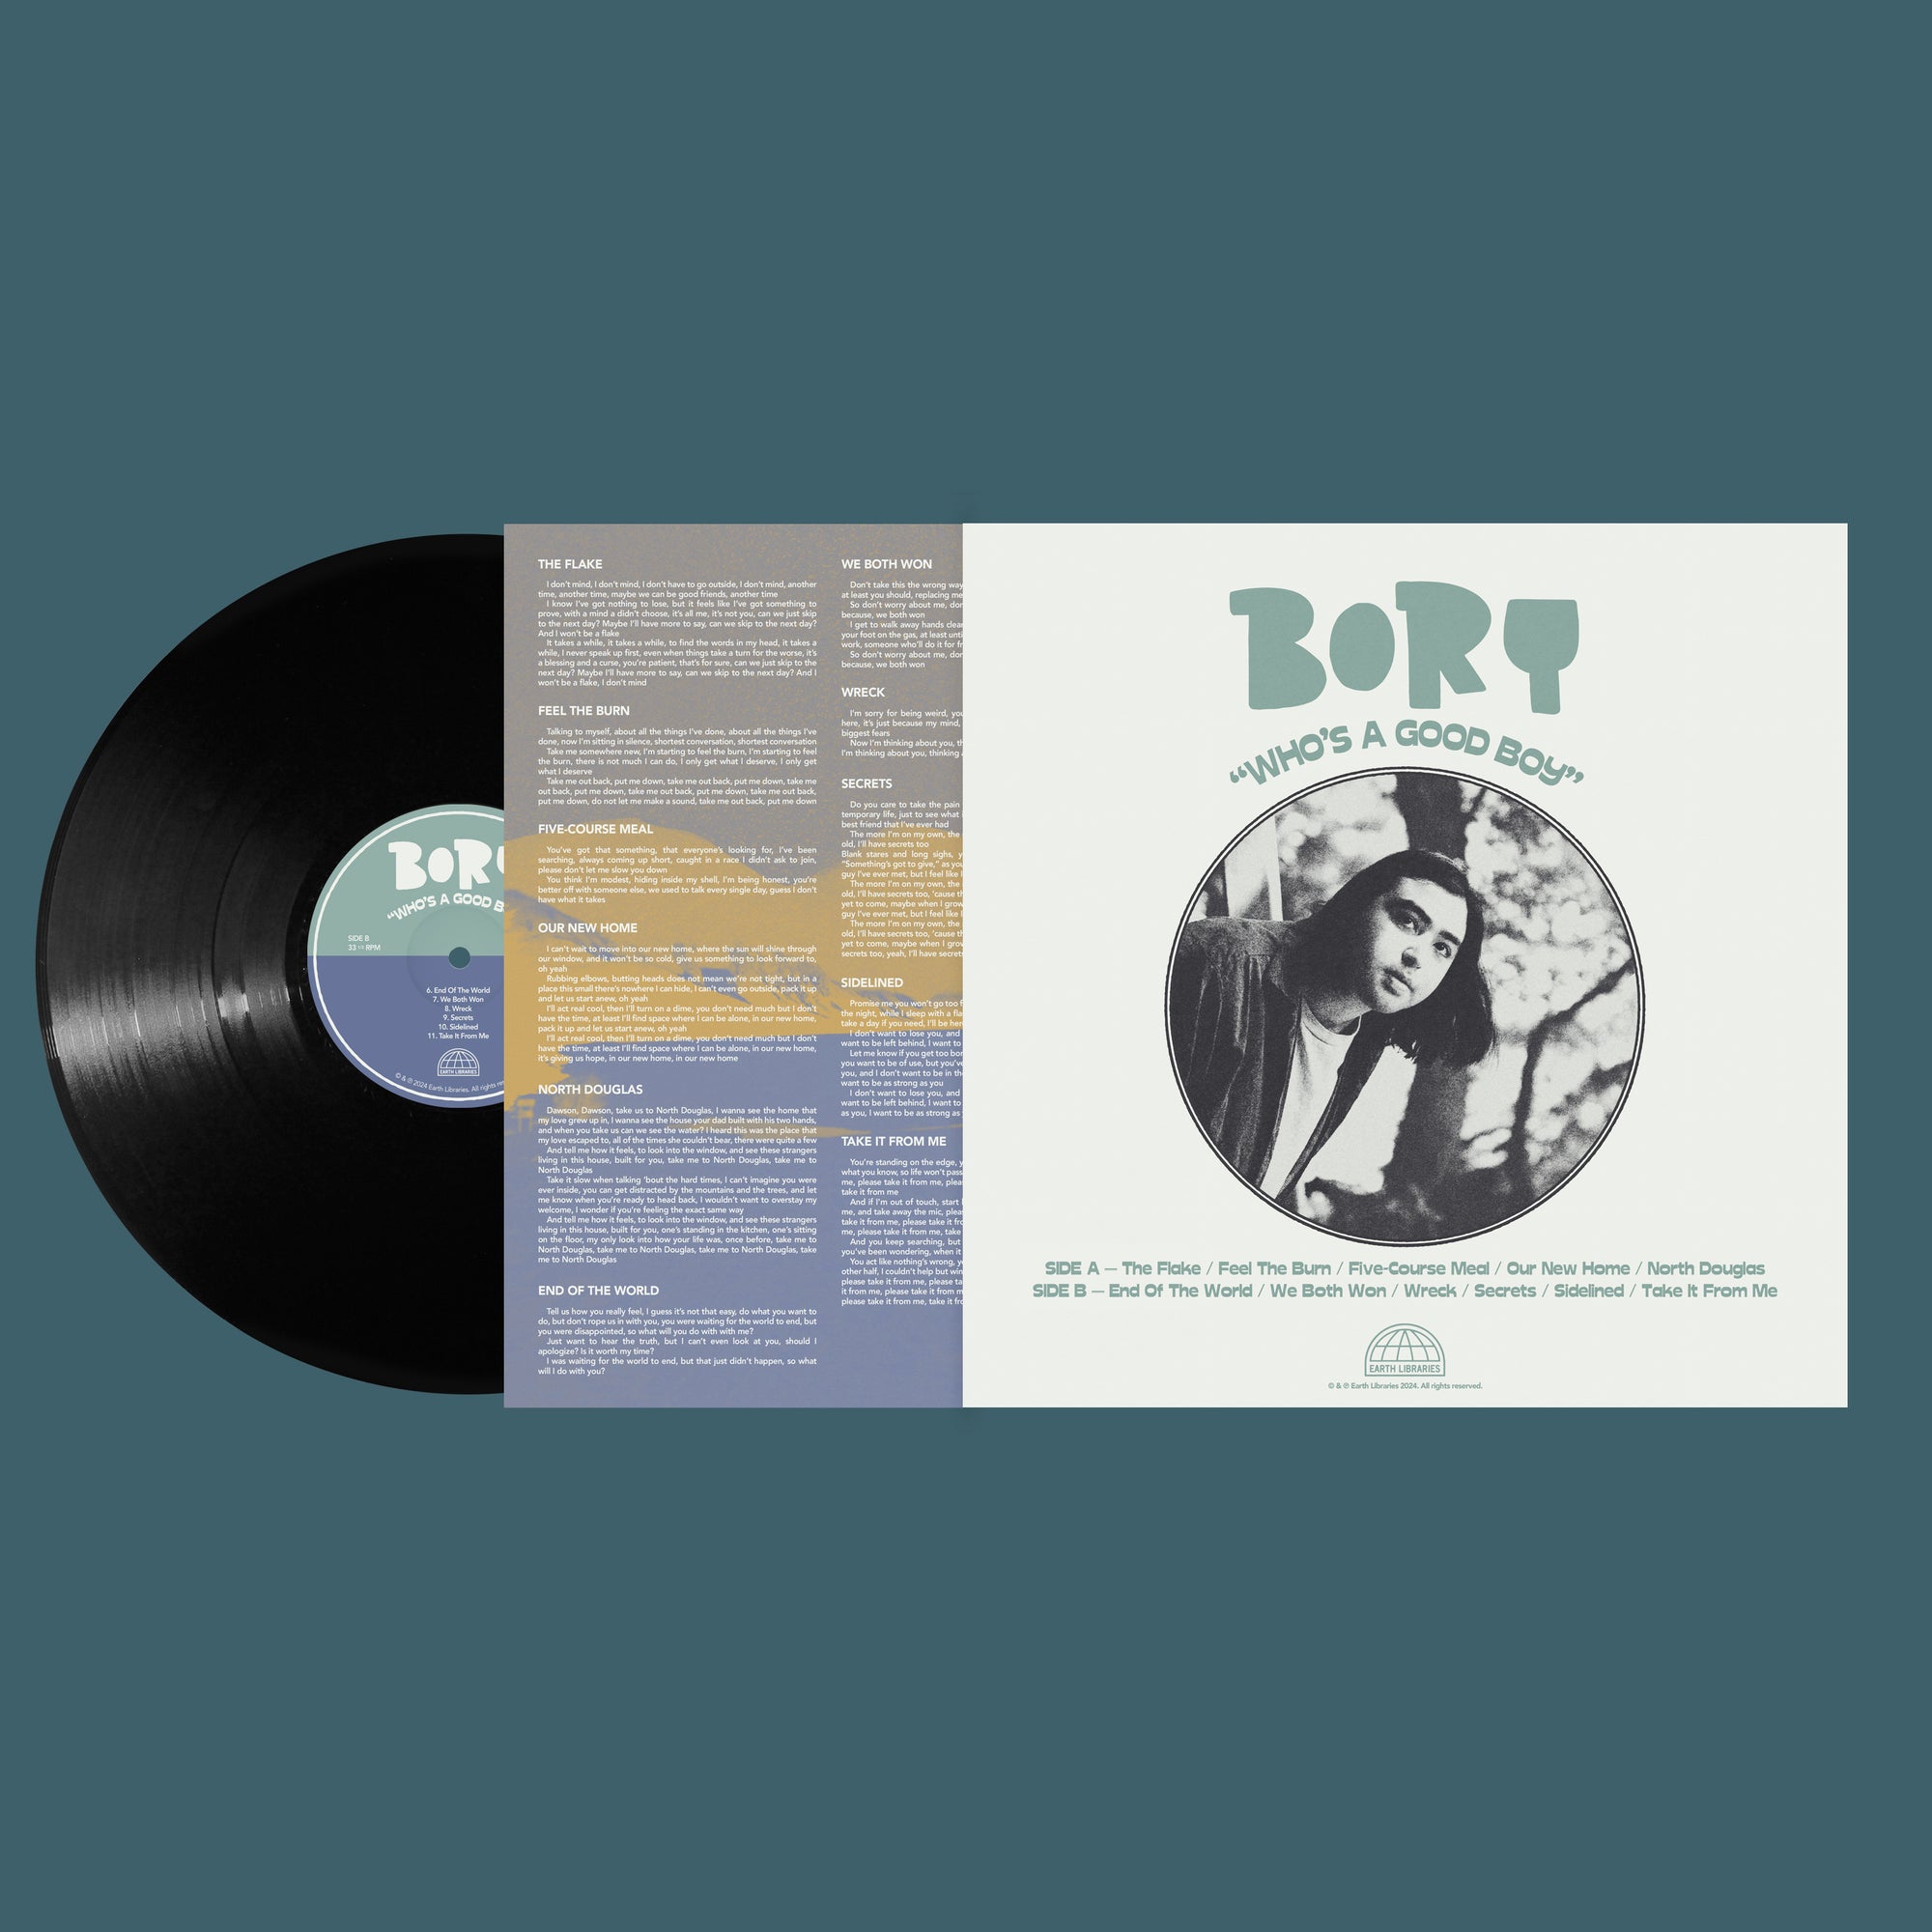 Bory - Who's A Good Boy (Pre-Order)